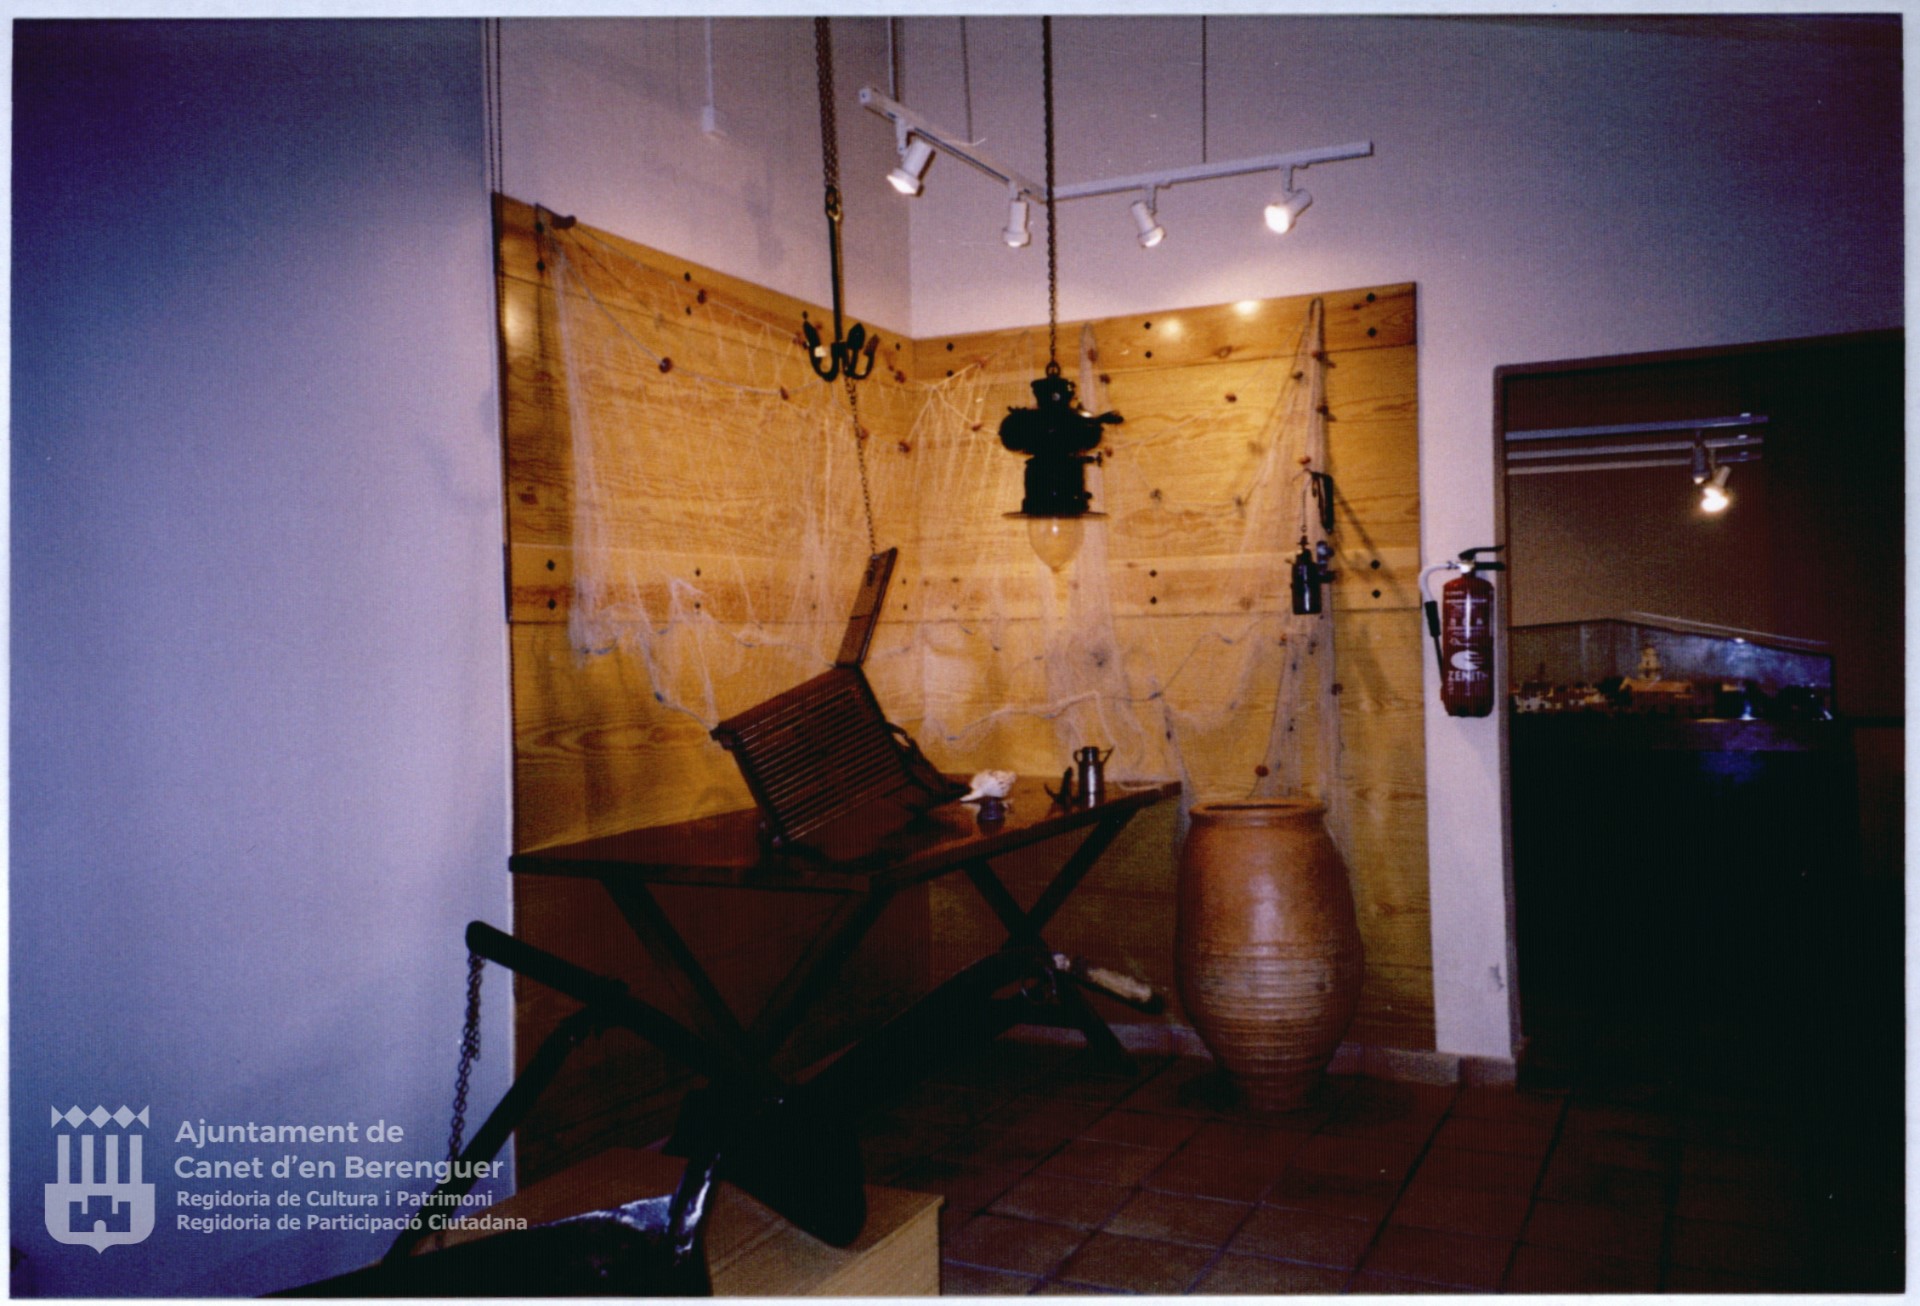 Museu Etnològic Canet d'en Berenguer